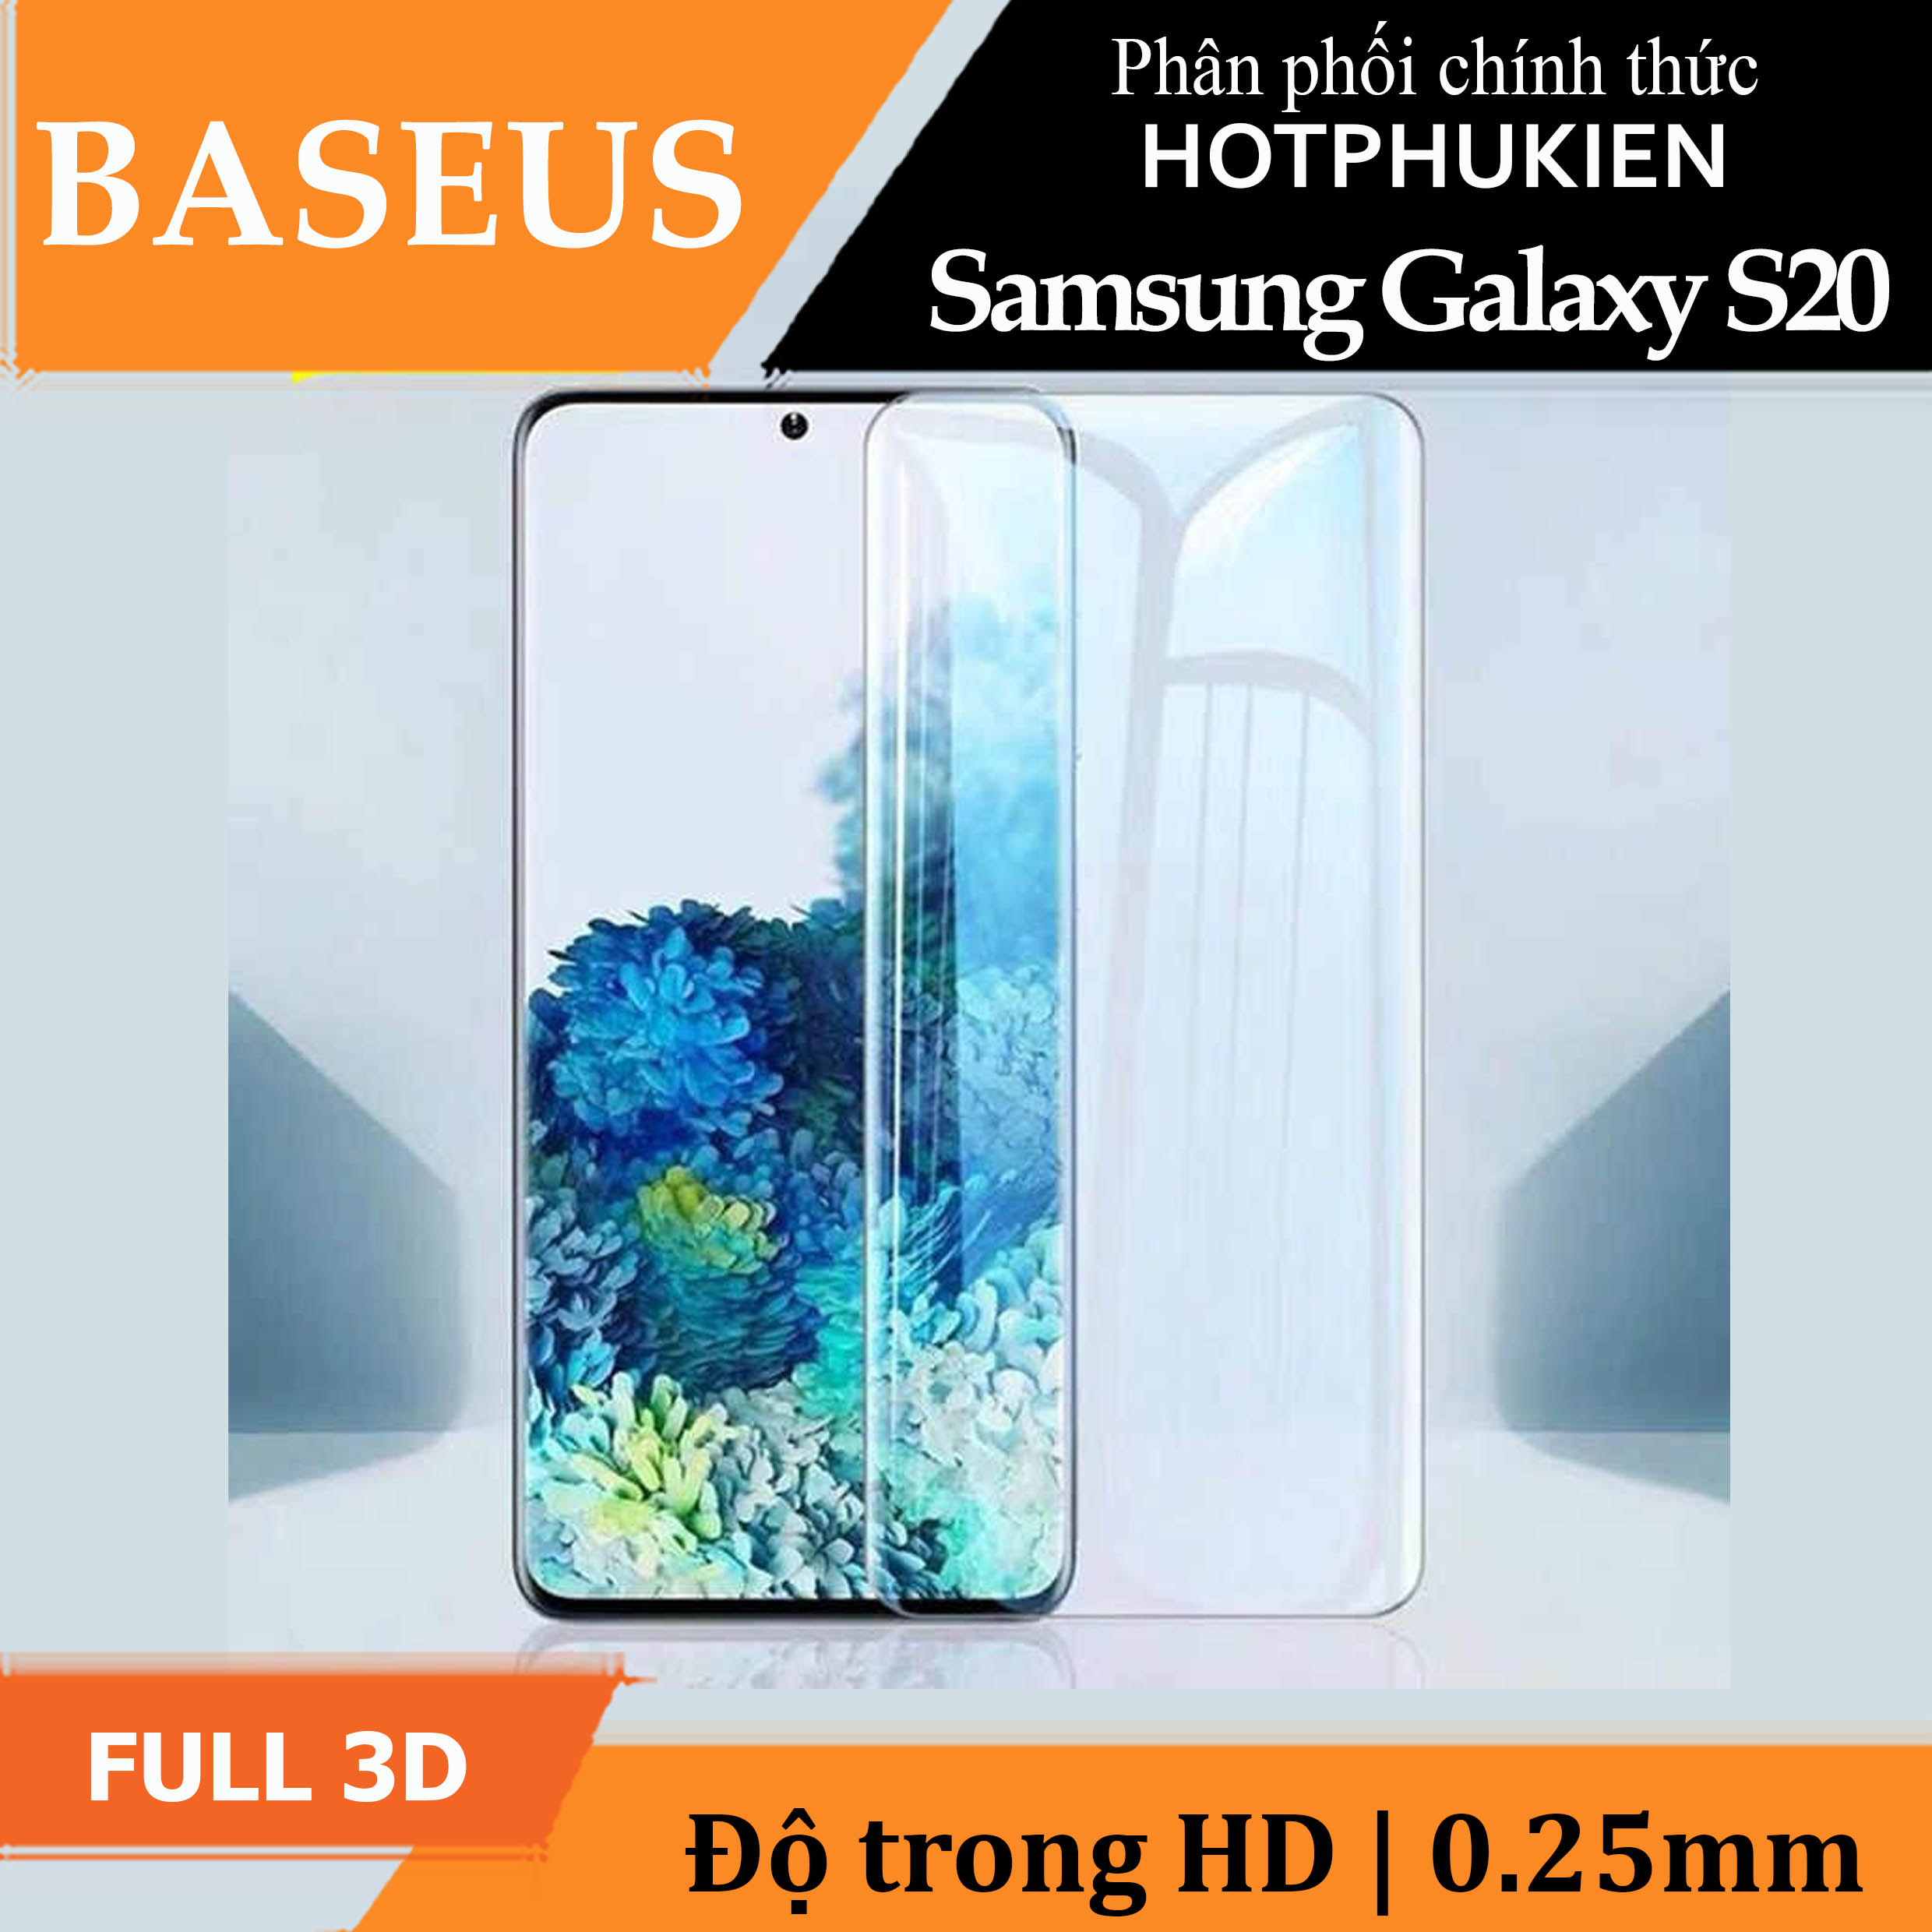 Bộ 2 miếng dán màn hình kính cường lực Full 3D chống tia UV cho Samsung Galaxy S20 hiệu Baseus